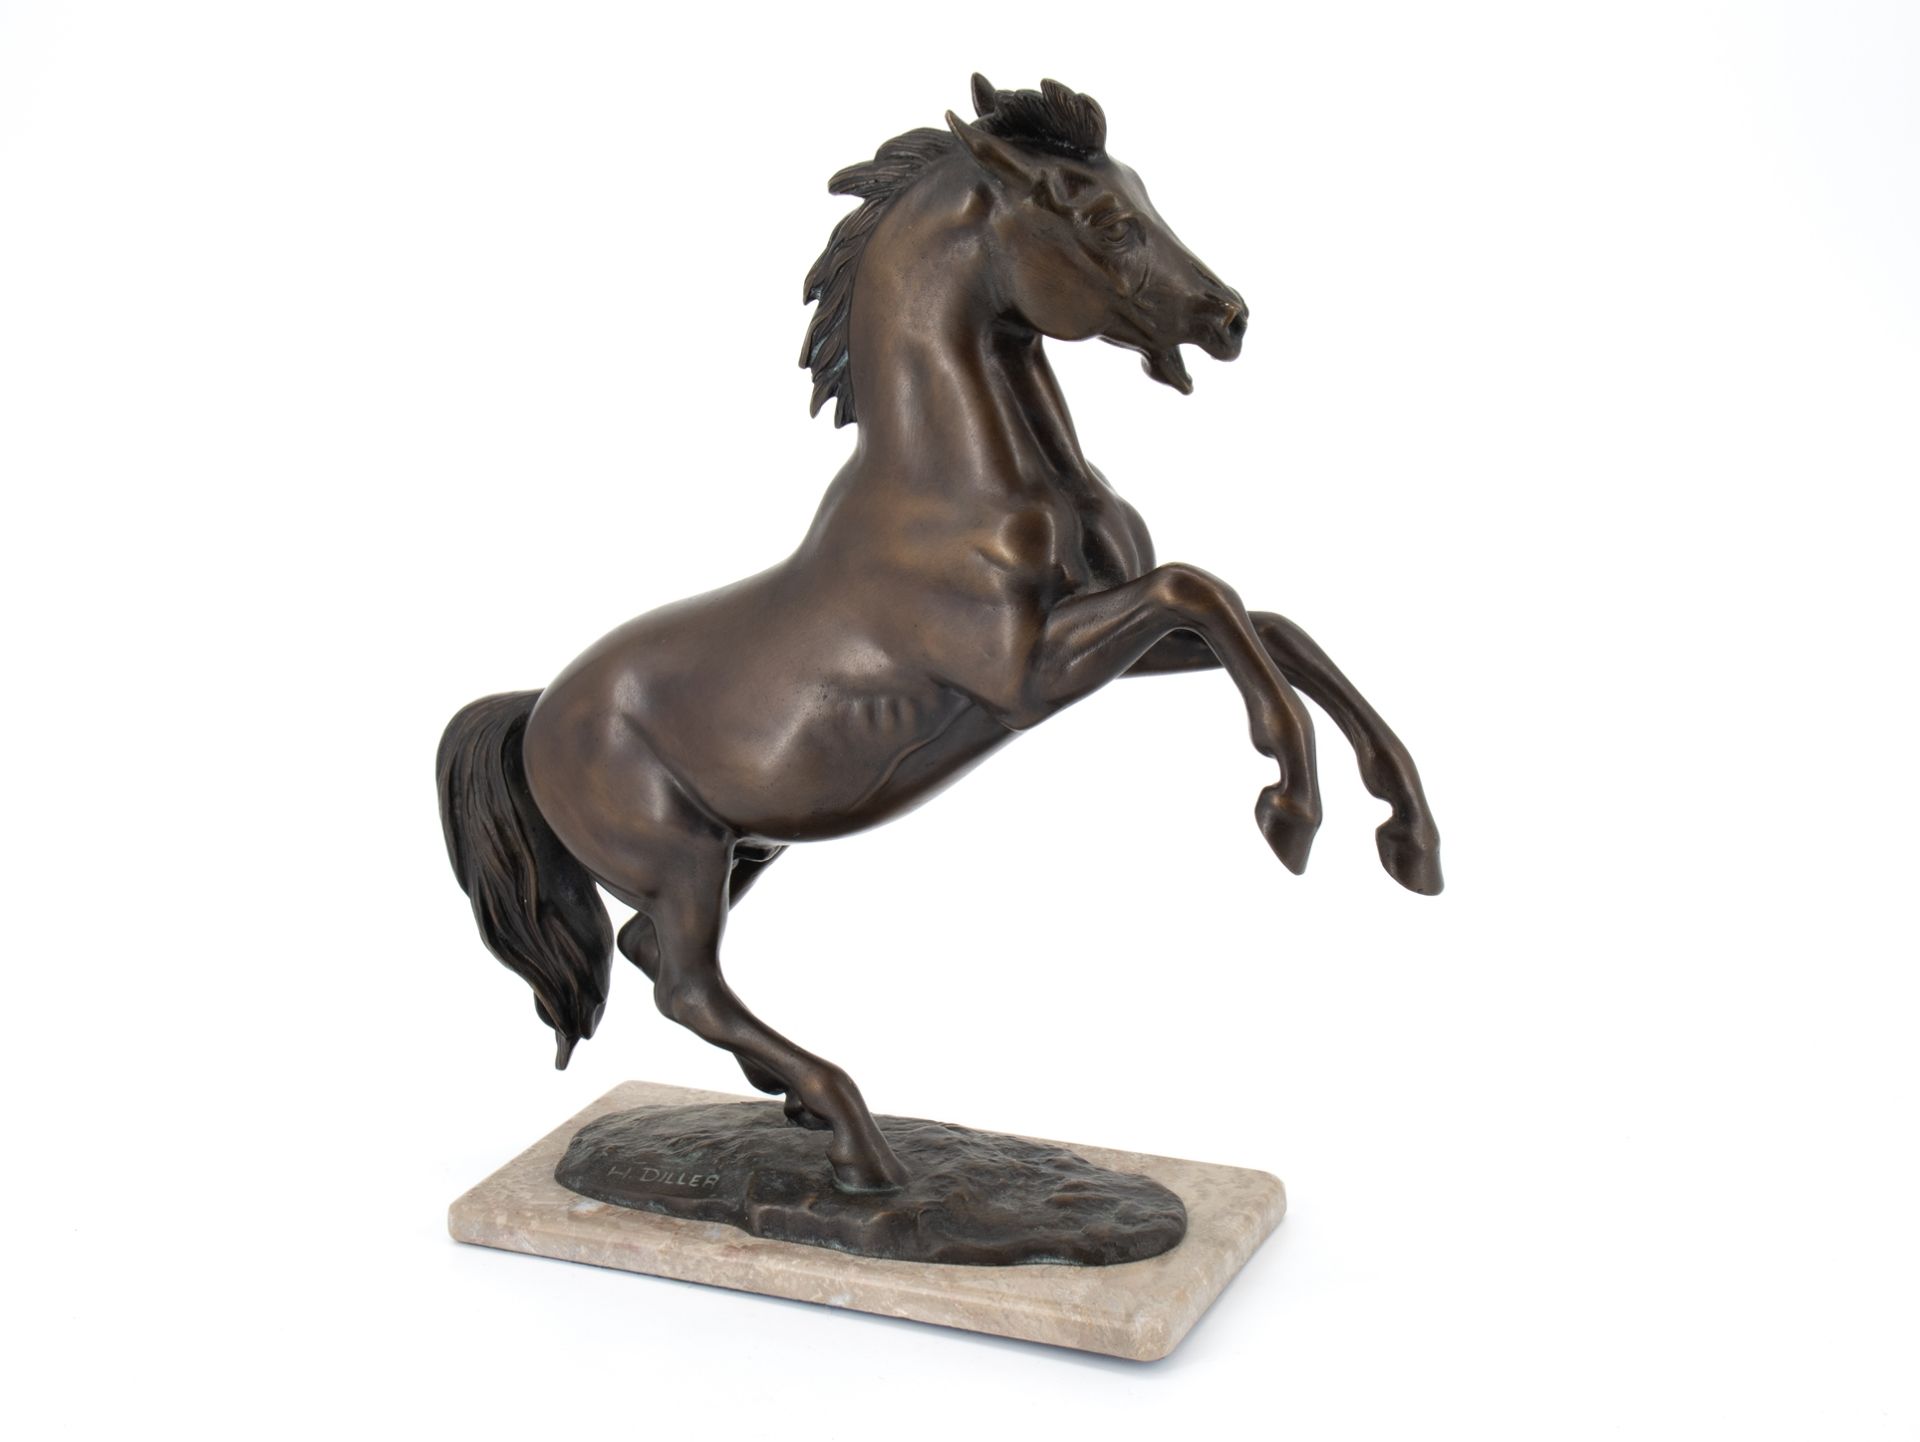 Diller Helmut (1911 - 1984), Bronzeskulptur "Steigendes Pferd"